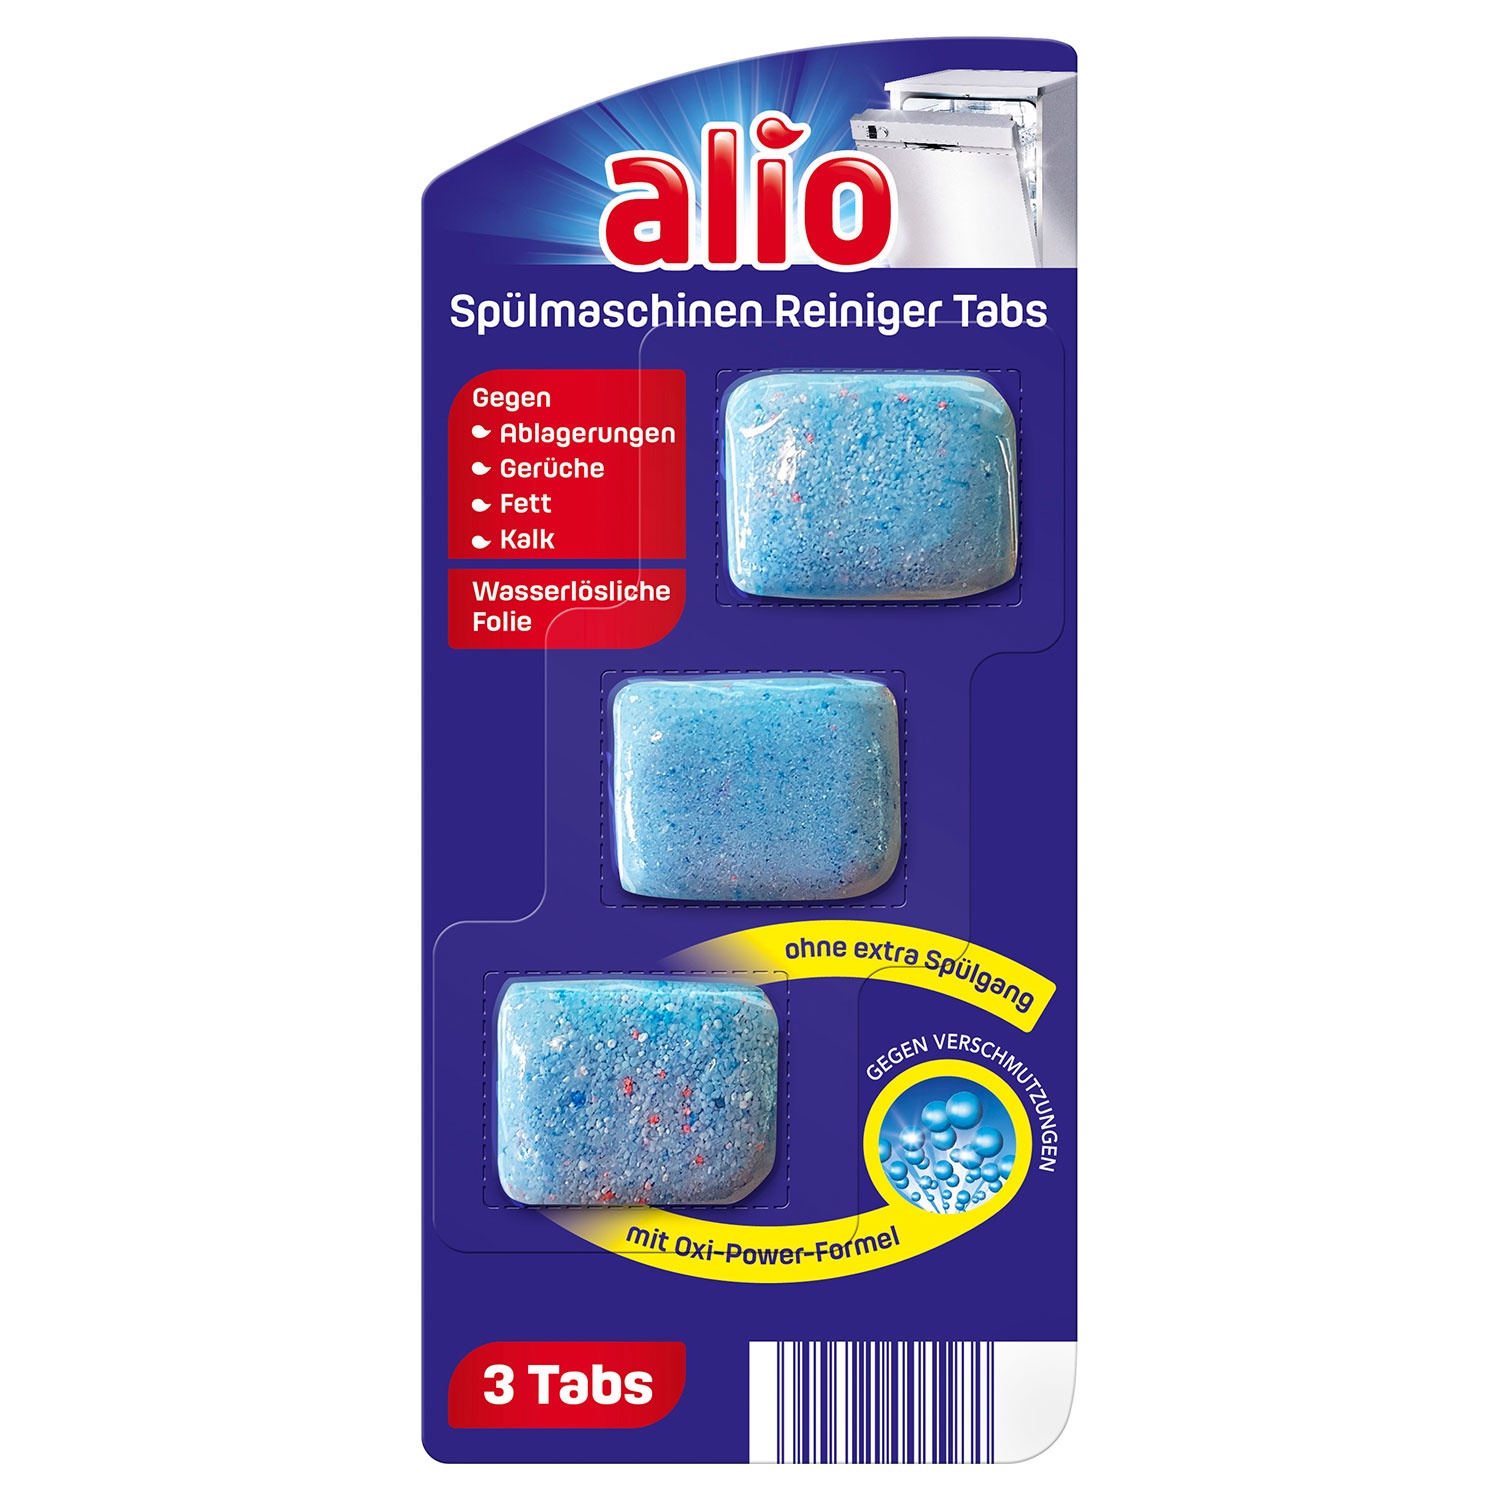 ALIO Spülmaschinen Reiniger Tabs 60 g